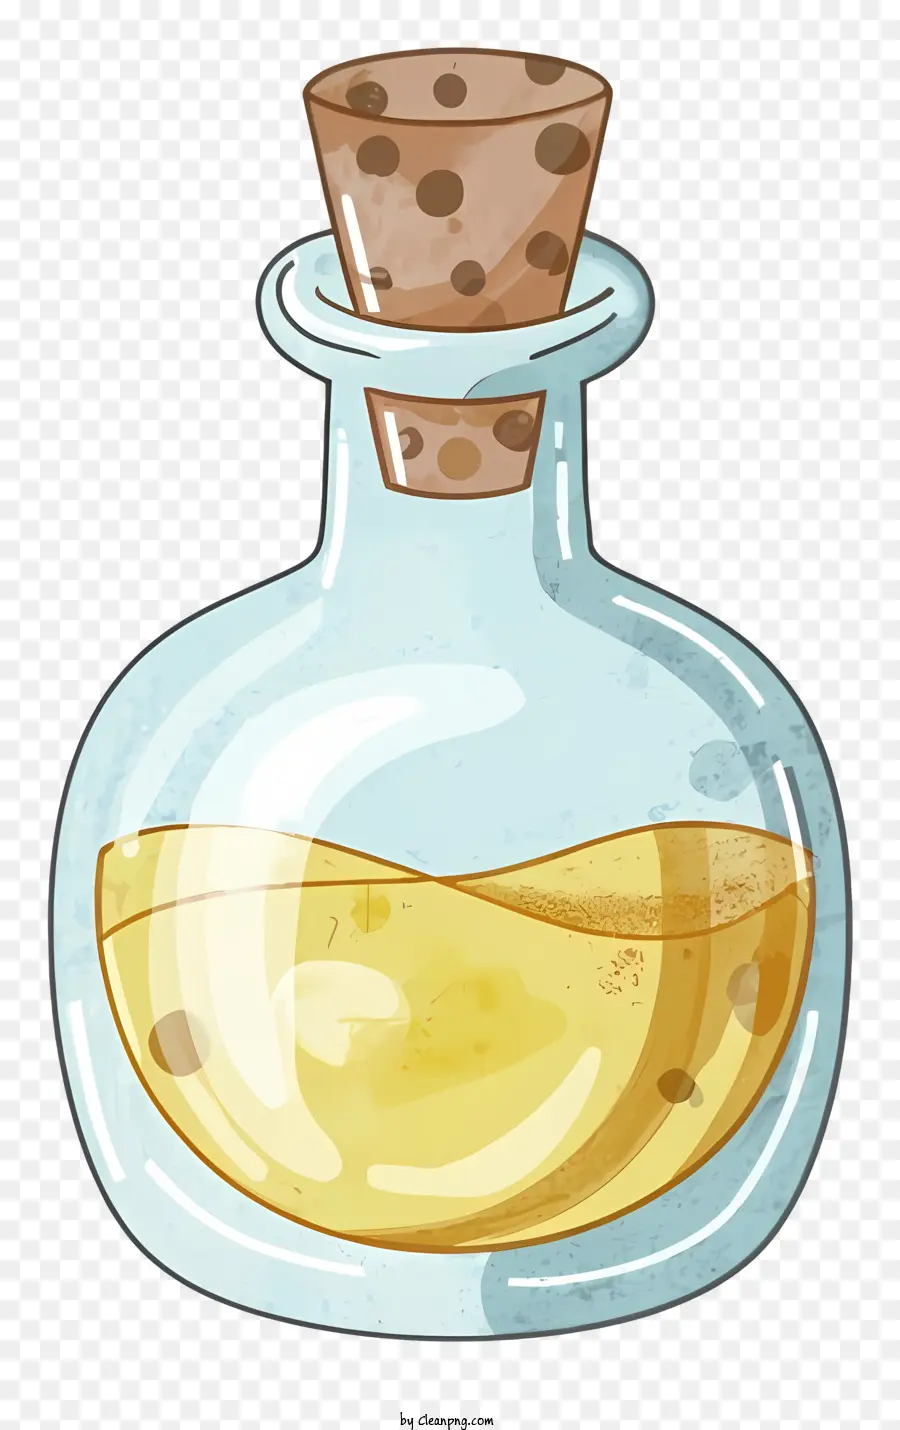 Cartoonglas Flasche Flüssiger Sirup kleines Holzstück transparentes Glas - Glasflasche mit sirupartigen Flüssigkeit, schwimmendem Holz